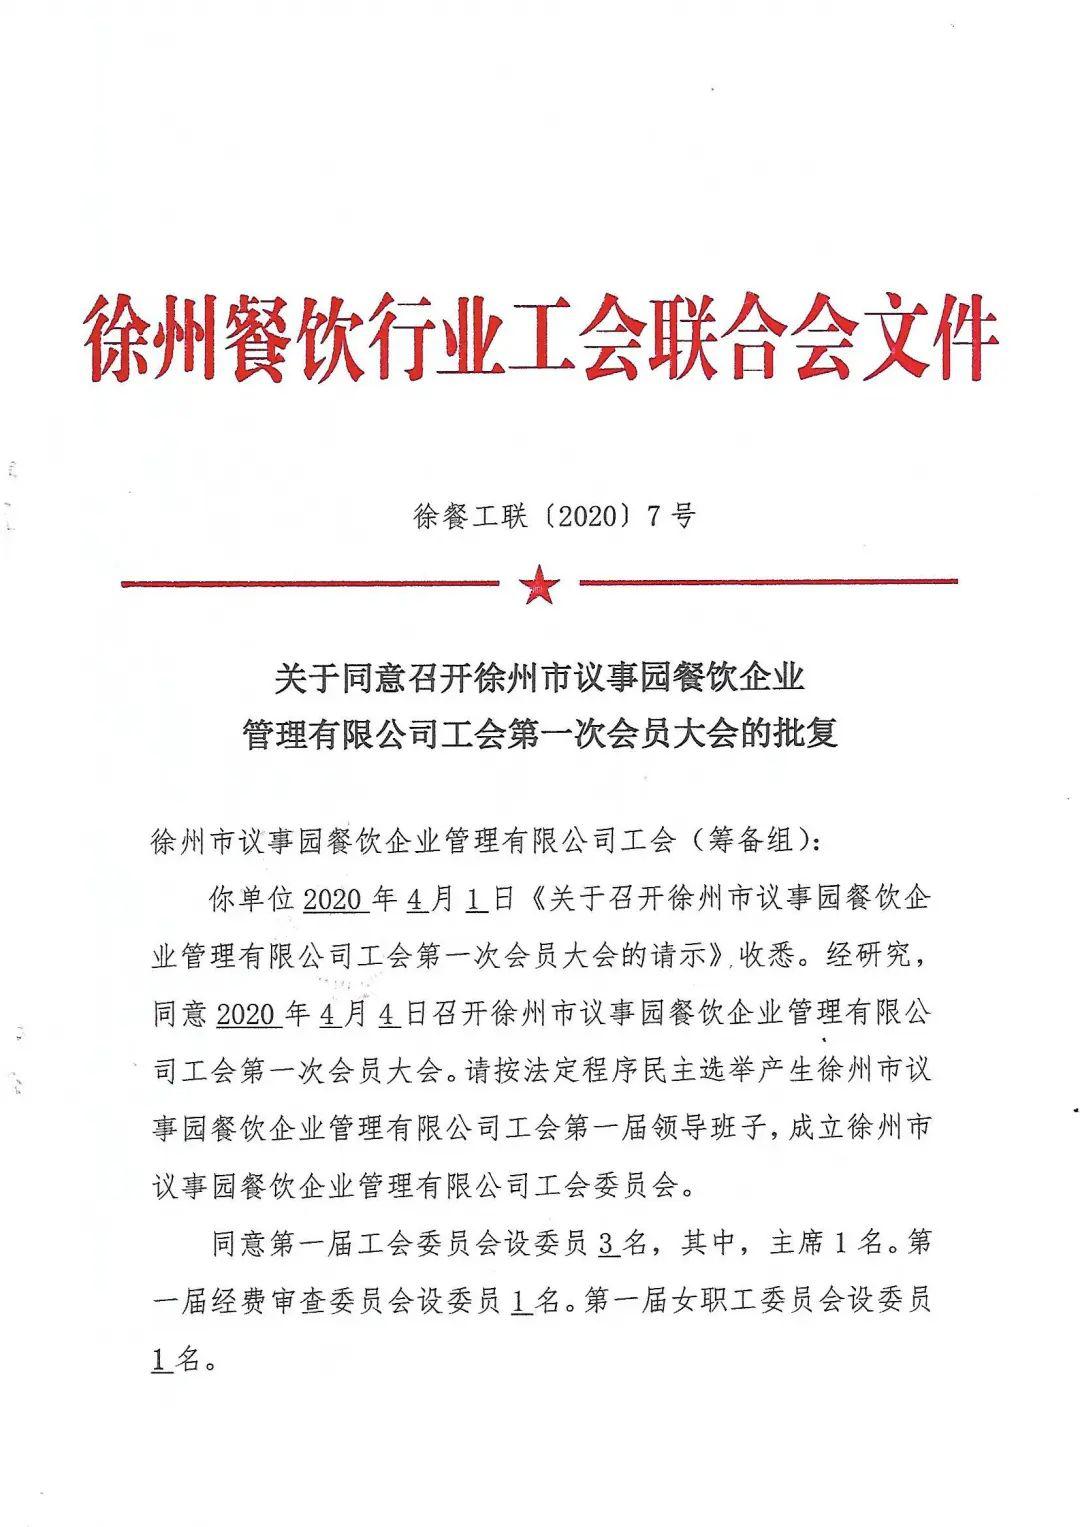 徐州议事园餐饮企业管理有限公司工会成立暨第一次会员大会胜利召开